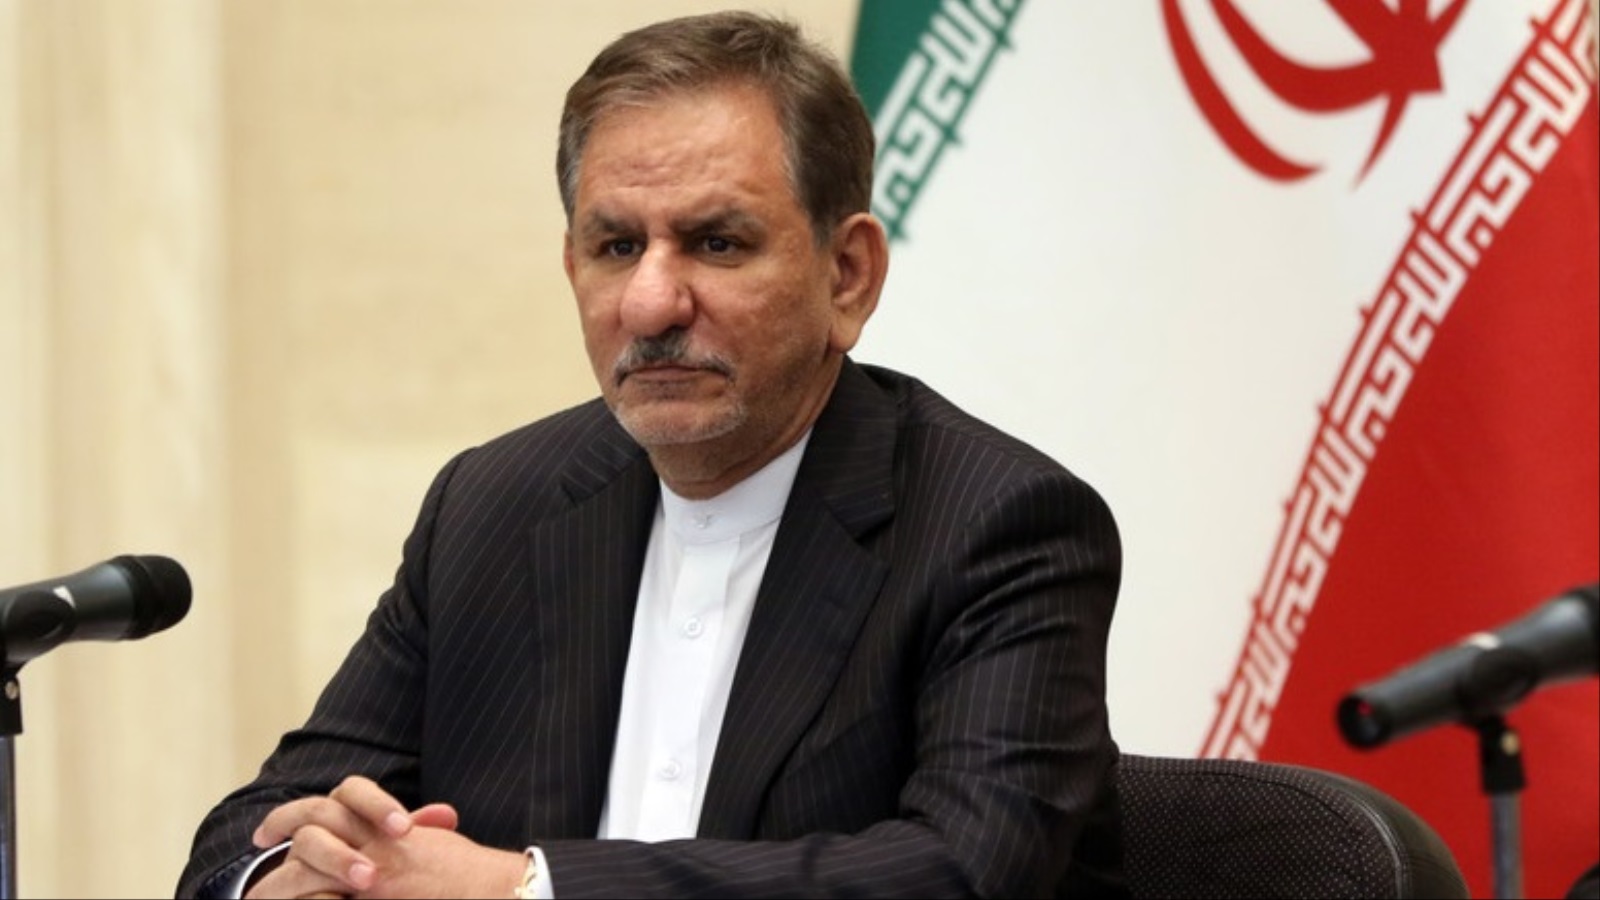 ‪نائب الرئيس الإيراني: حل التوترات في المنطقة يحتاج إلى الحوار وليس إلى تحالف عسكري‬ (الأوروبية)